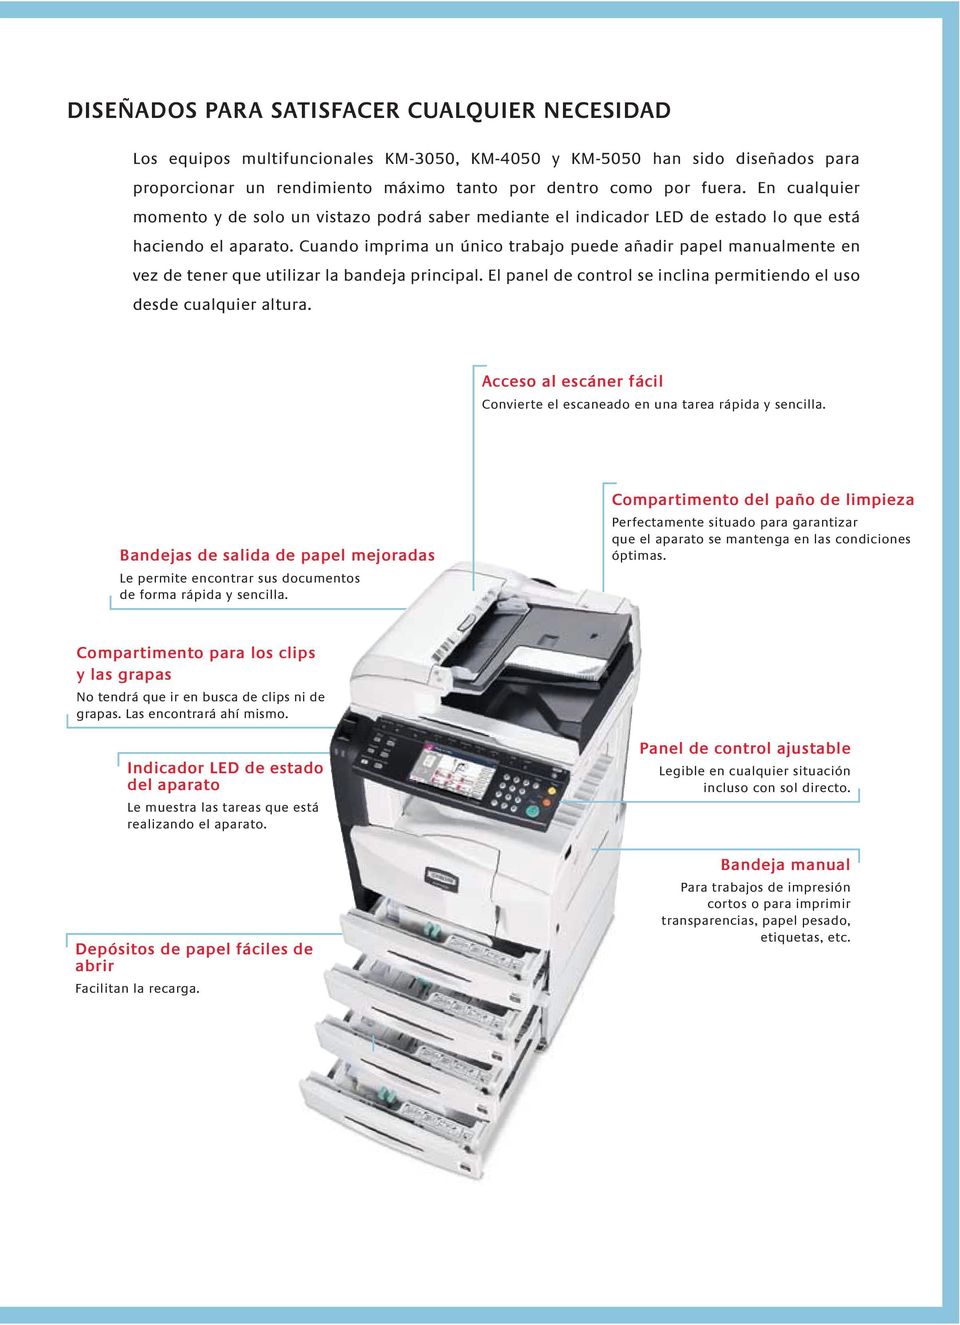 Cuando imprima un único trabajo puede añadir papel manualmente en vez de tener que utilizar la bandeja principal. El panel de control se inclina permitiendo el uso desde cualquier altura.